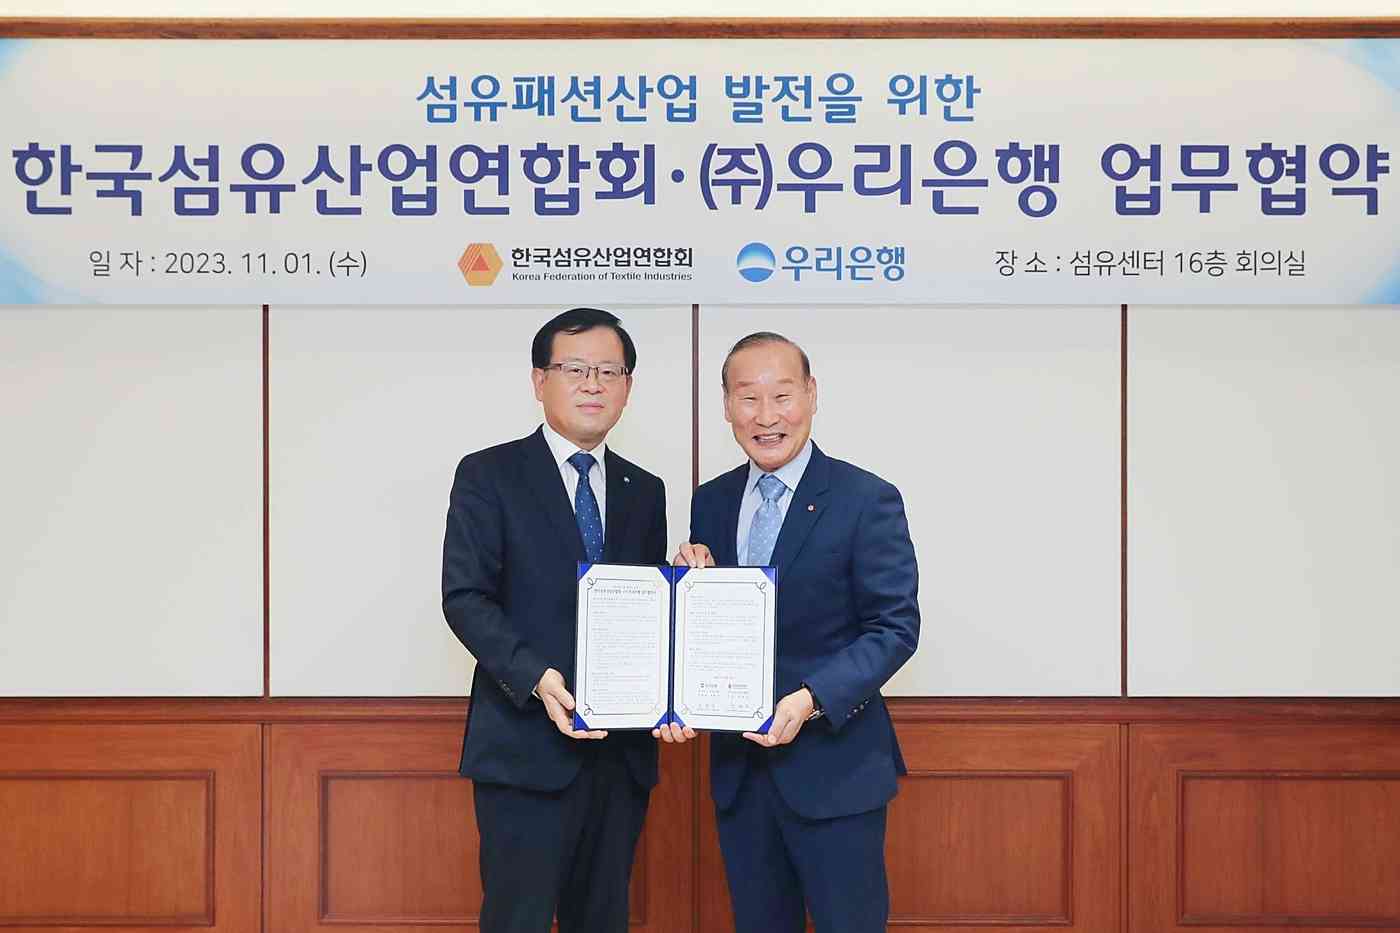 우리은행은 지난 1일 한국섬유산업연합회와 섬유패션산업 발전을 위한 업무협약을 체결했다. 조병규 우리은행장(왼쪽)과 최병오 한국섬유산업연합회 회장이 기념촬영을 하고 있다.(우리은행 제공)